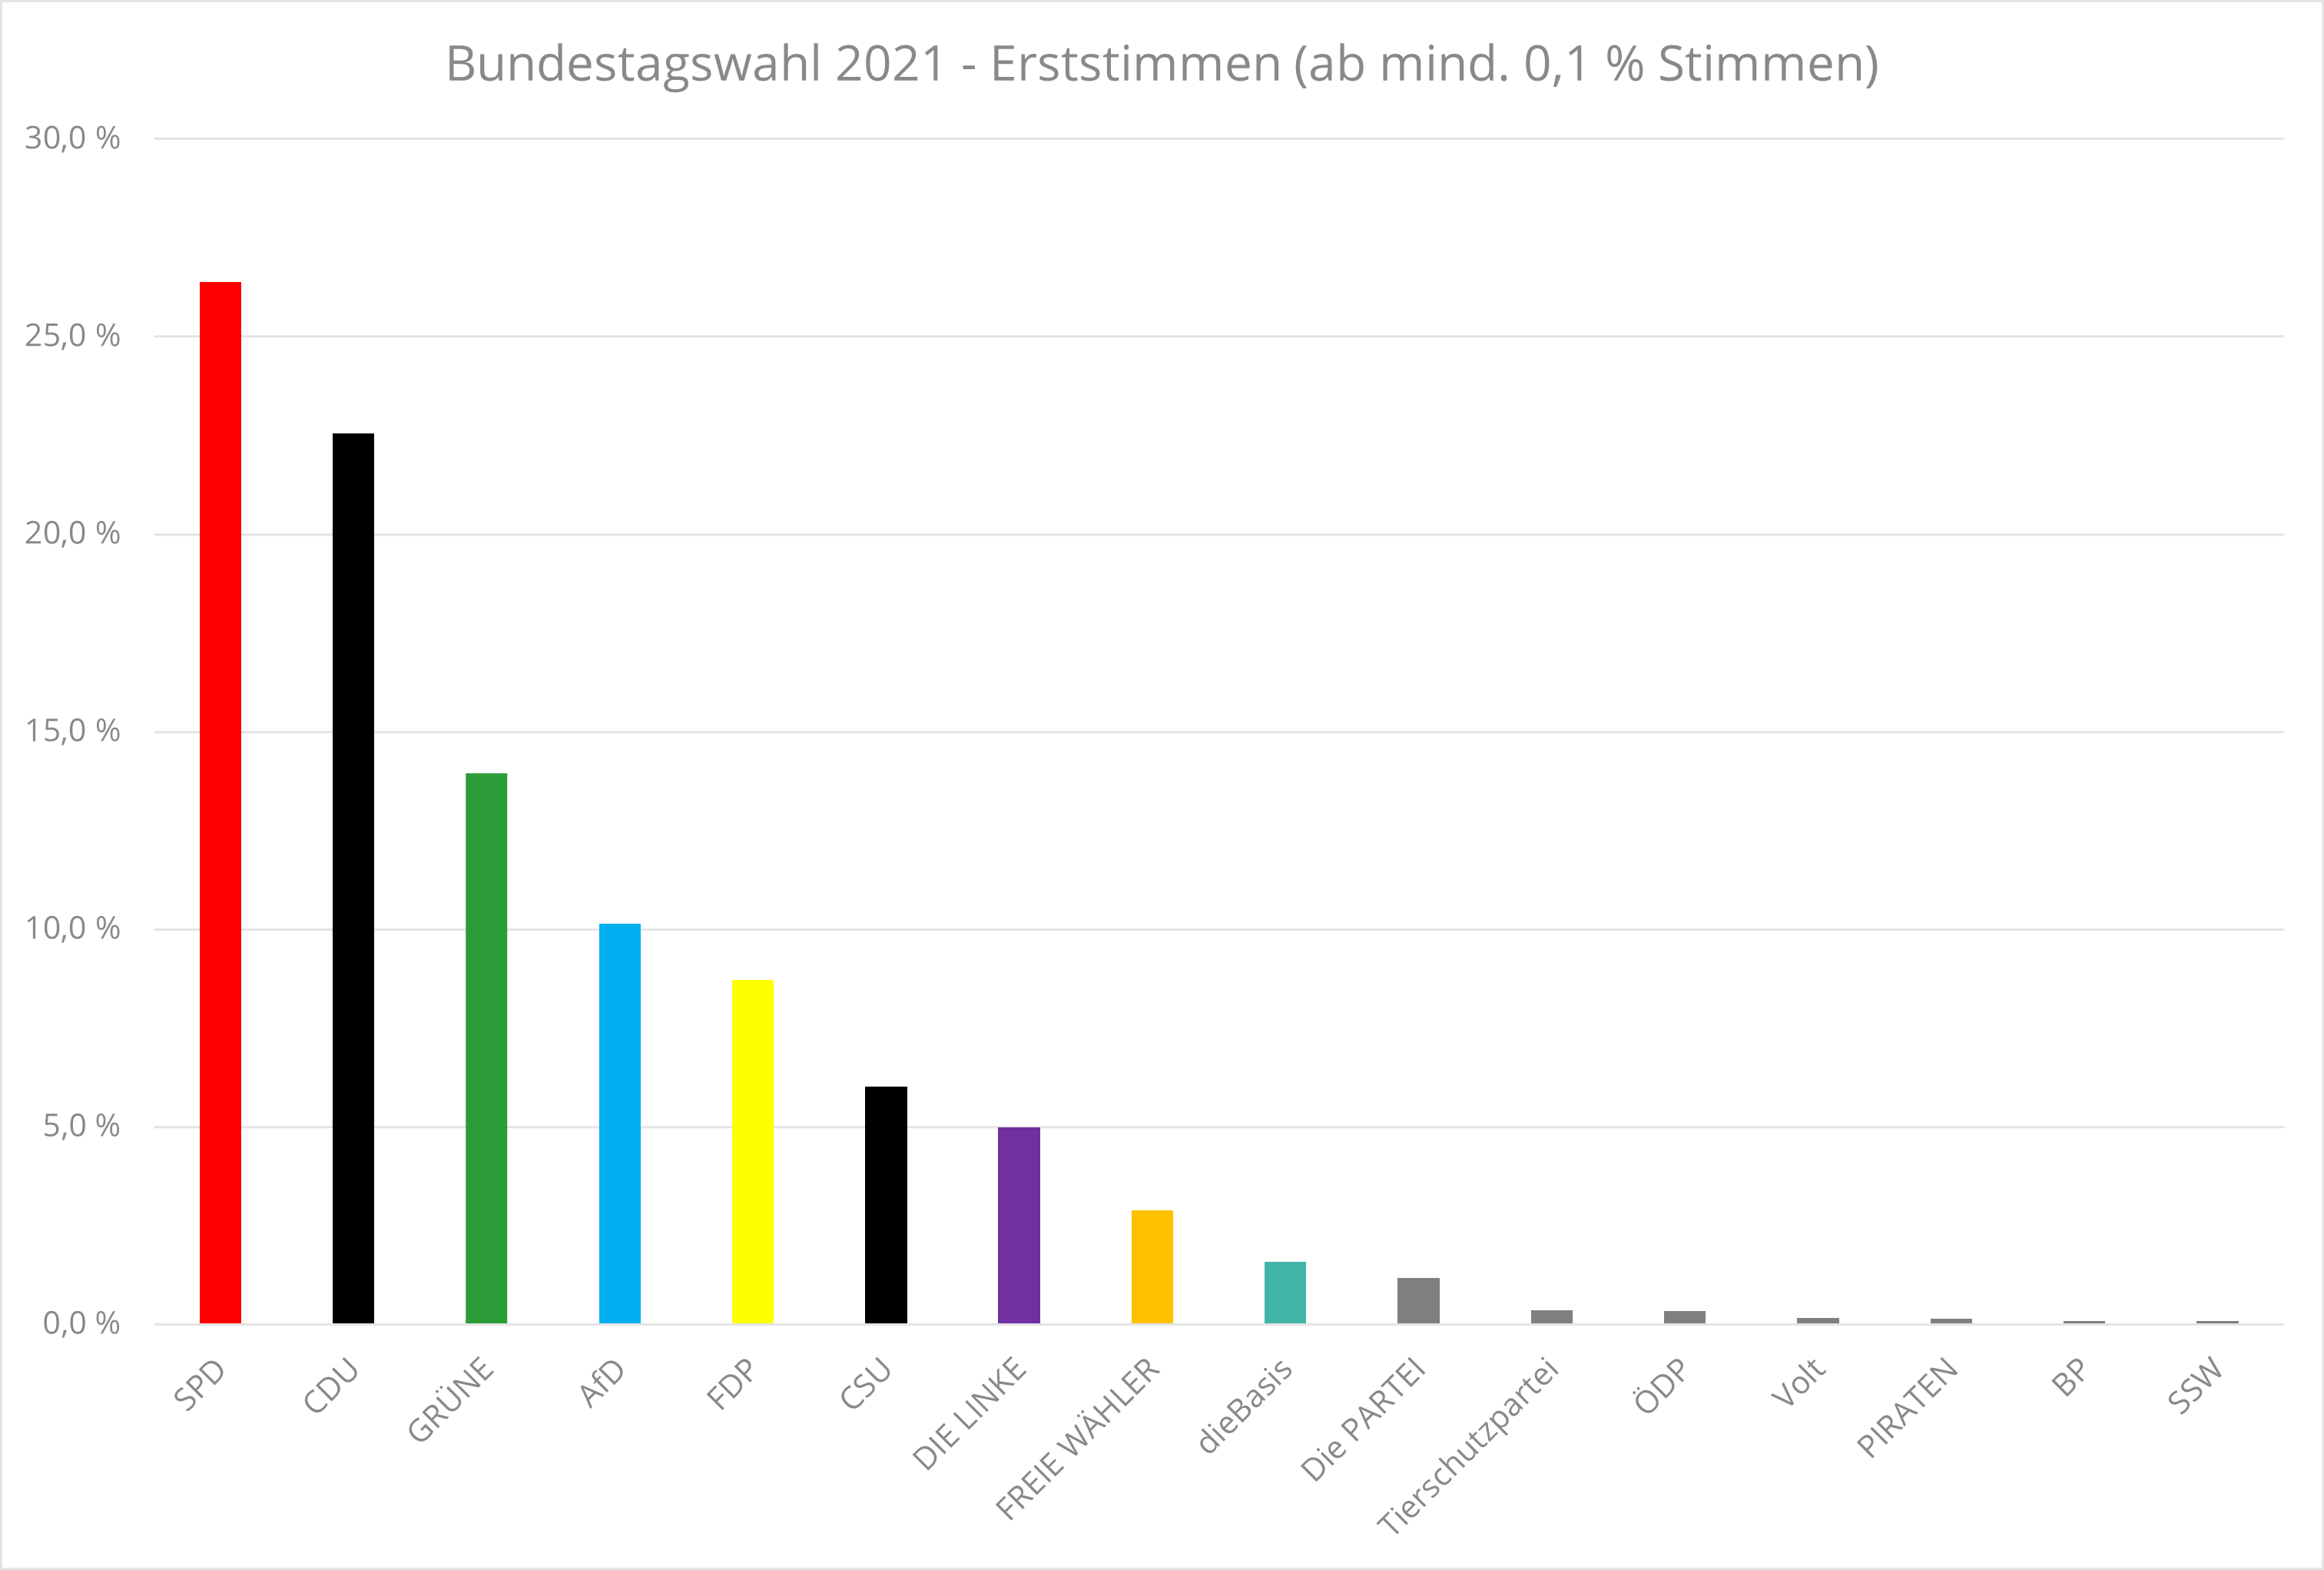 Bundestagswahl 2021 - Ergebnisse Erststimmen (ab mindestens 0.1 Prozent)